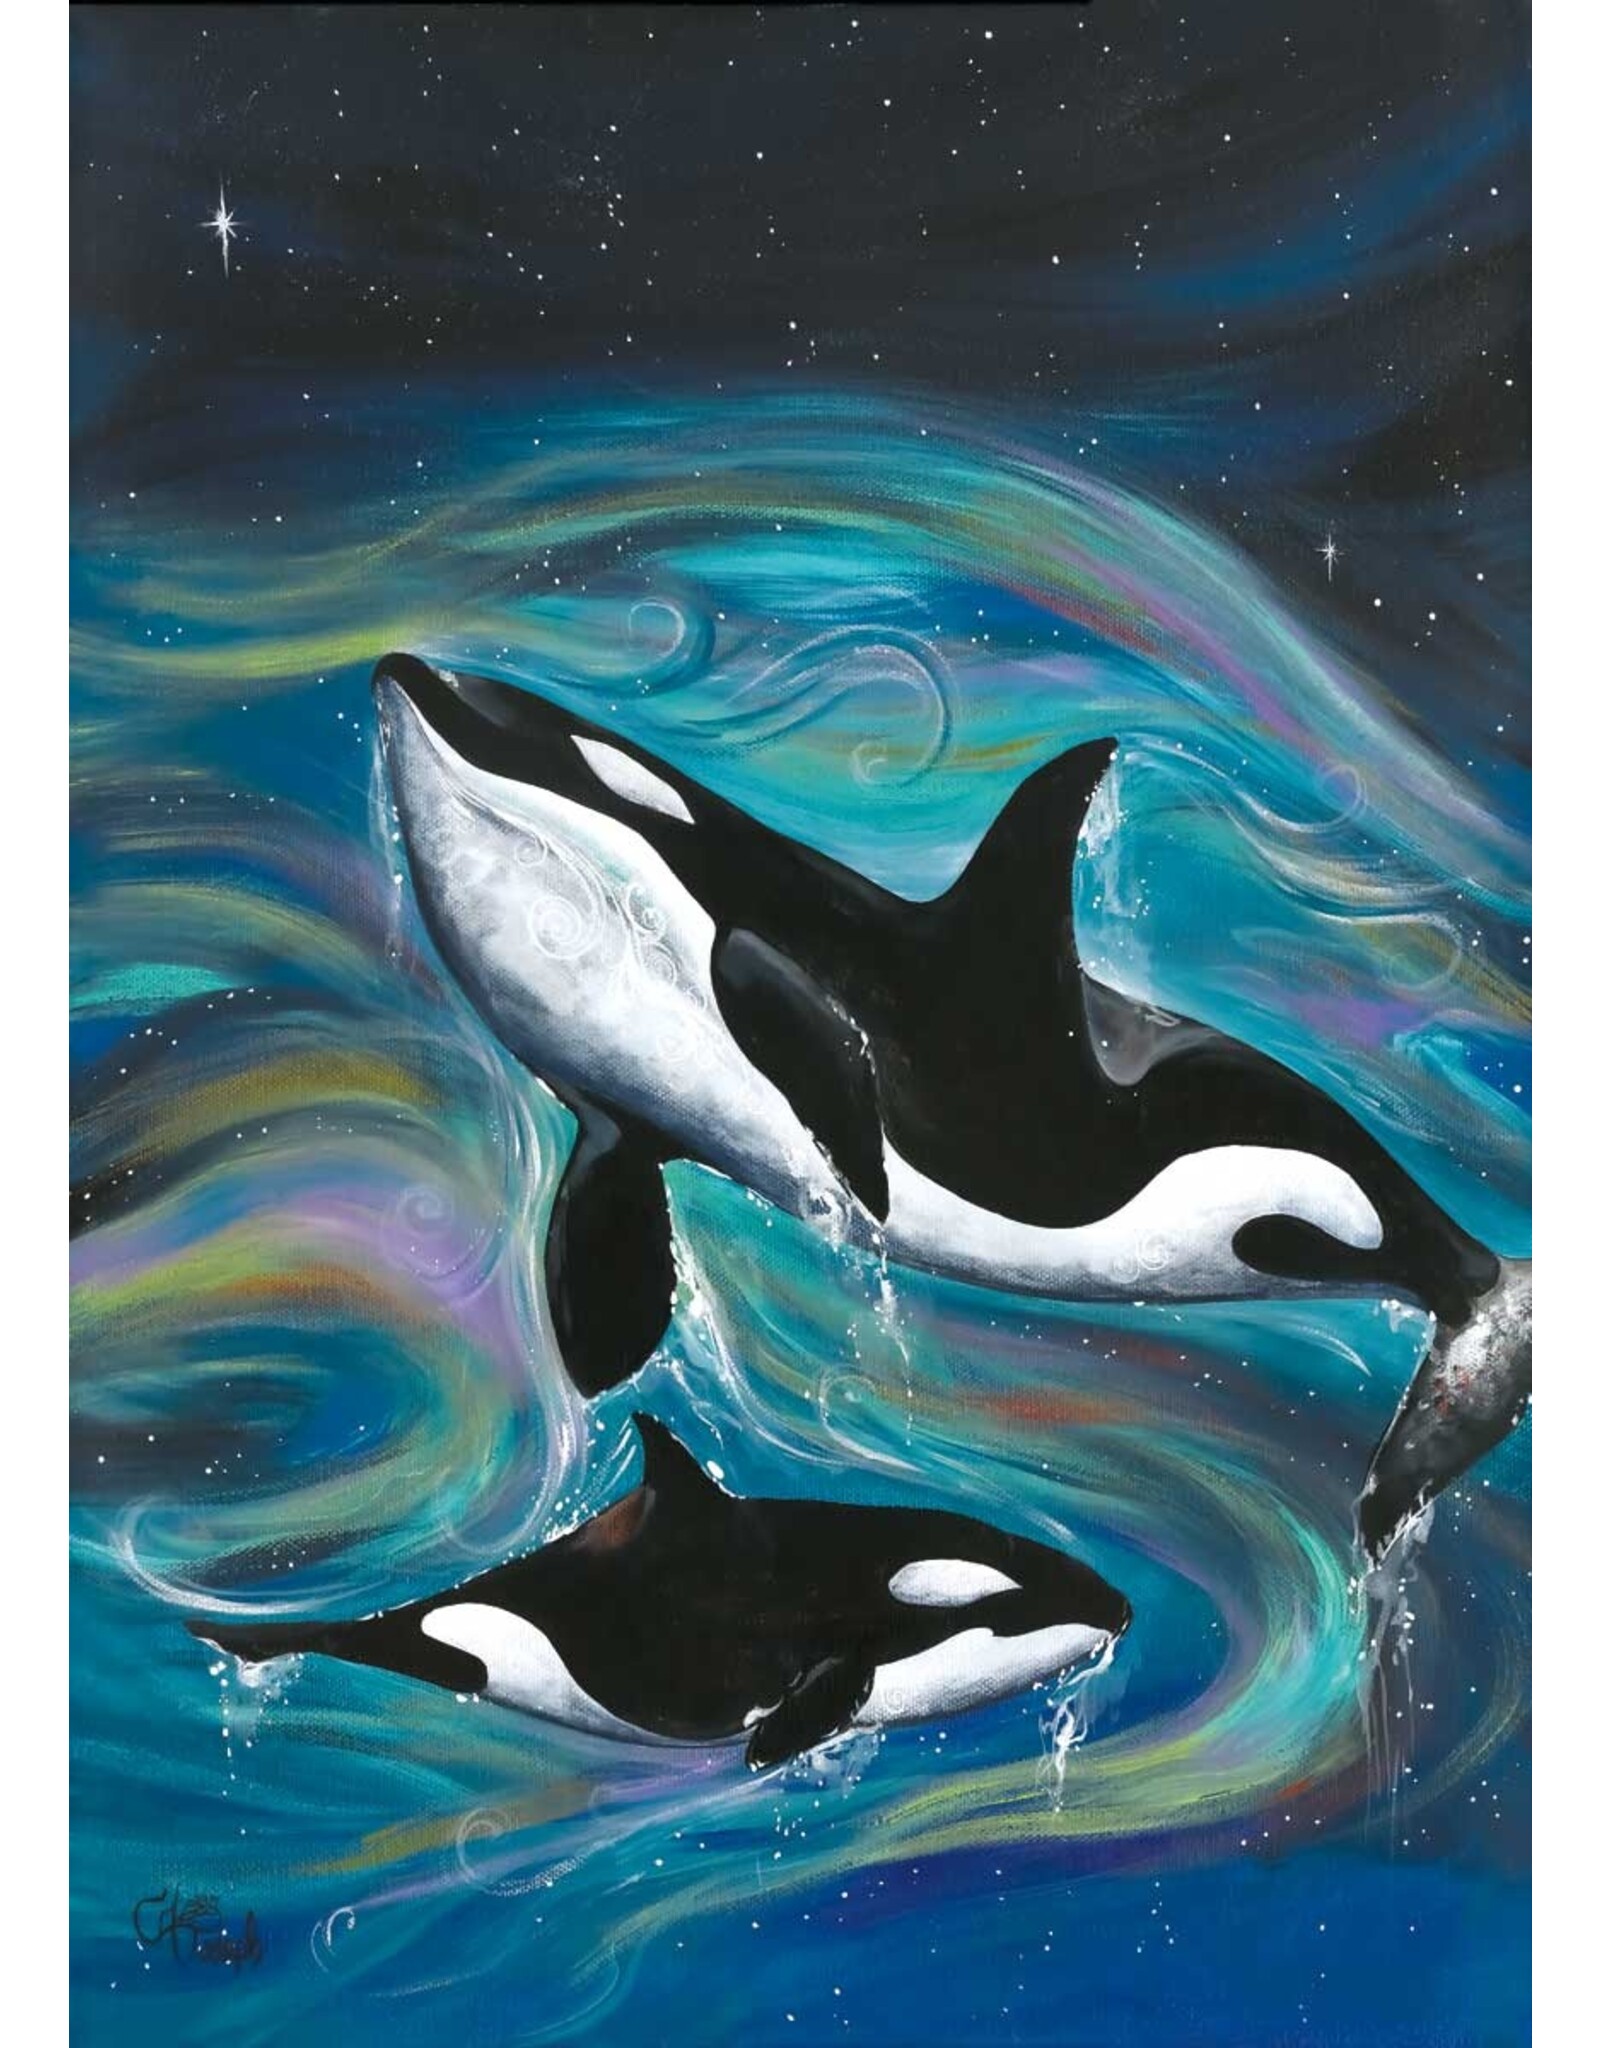 Killer Whales par Carla Joseph Encadrée